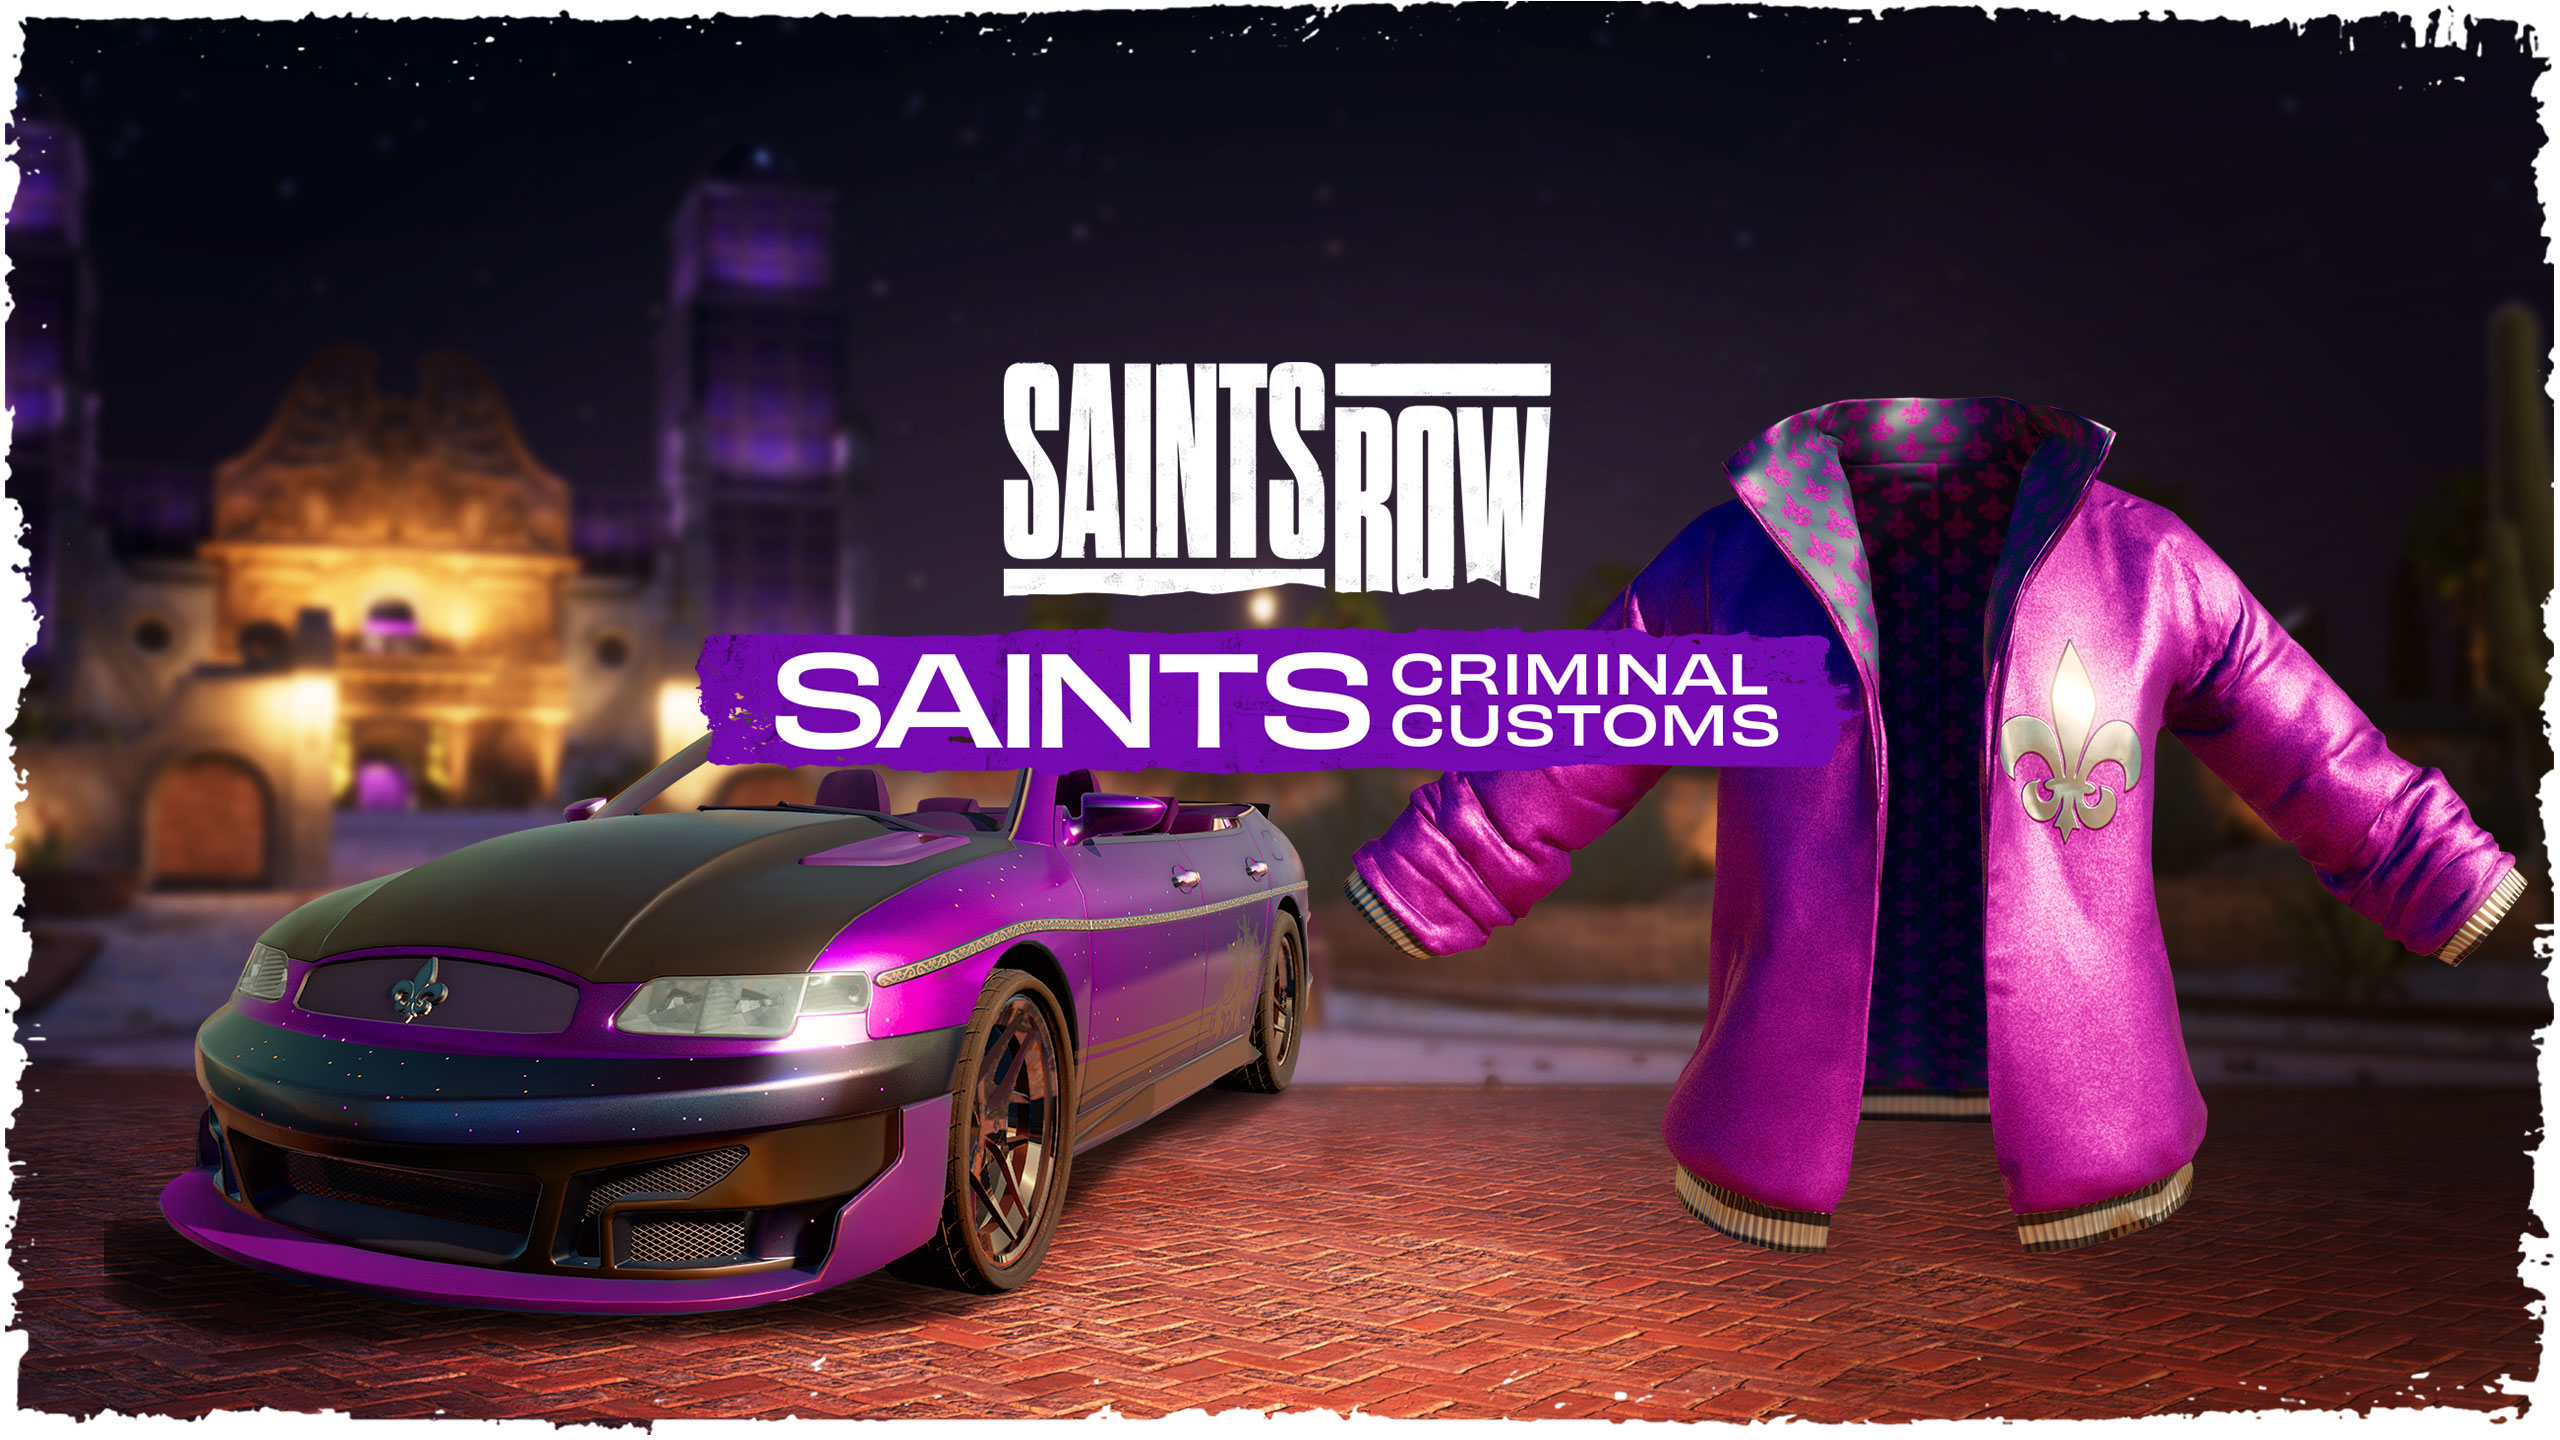 Saints Row Saints Criminal Customs Edition Epic Games CD Key 68.2$